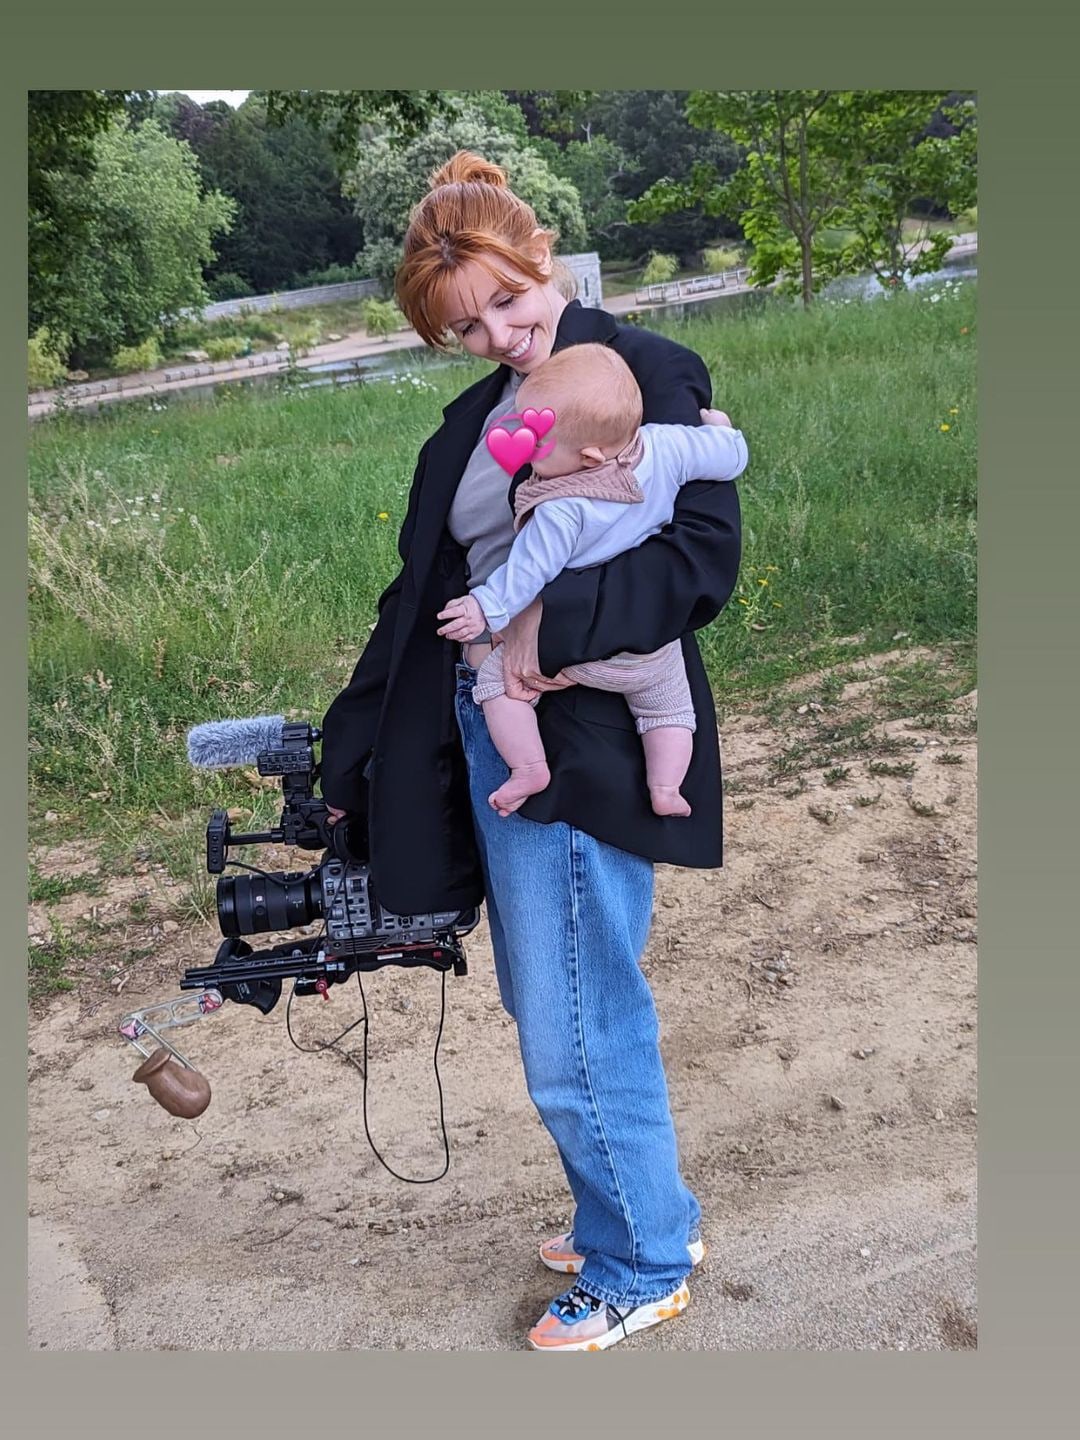 Stacey Dooley segura bebê com câmera 